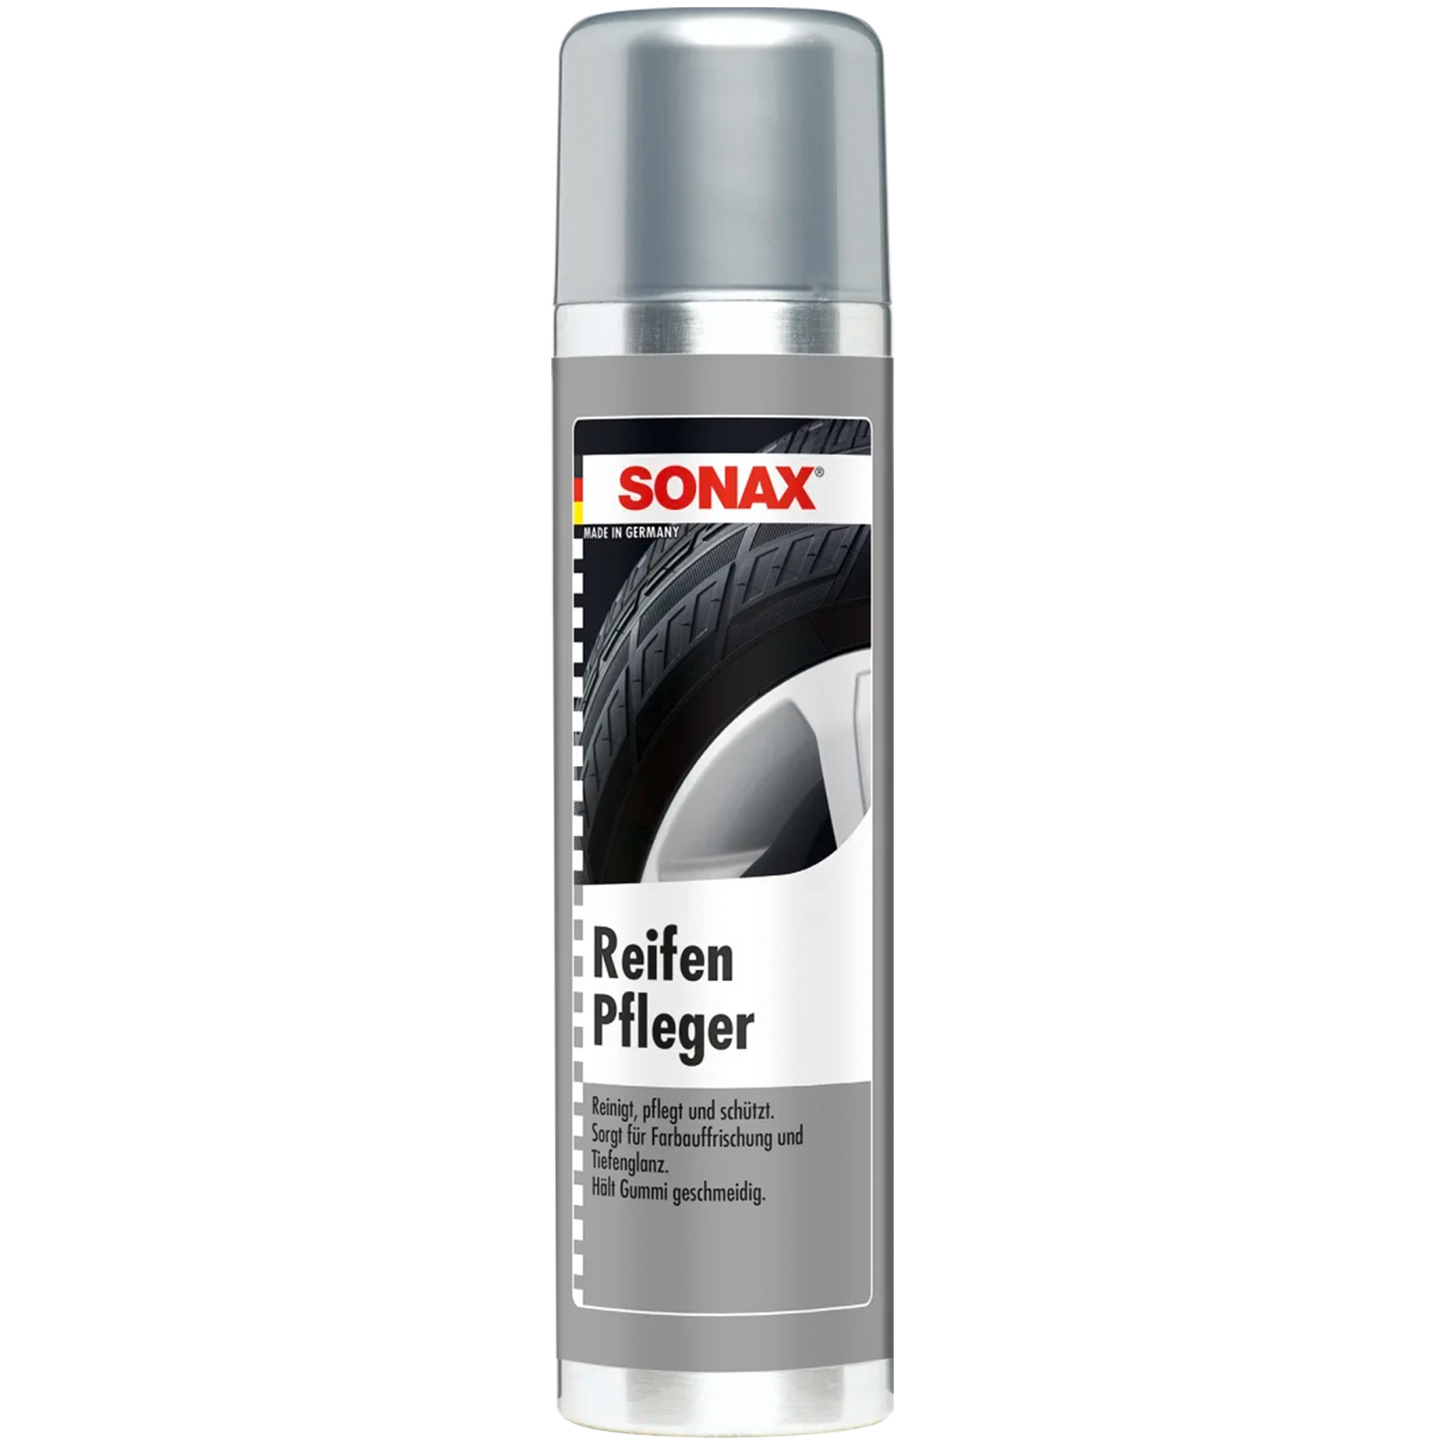 SONAX Reifenpfleger - 400ml